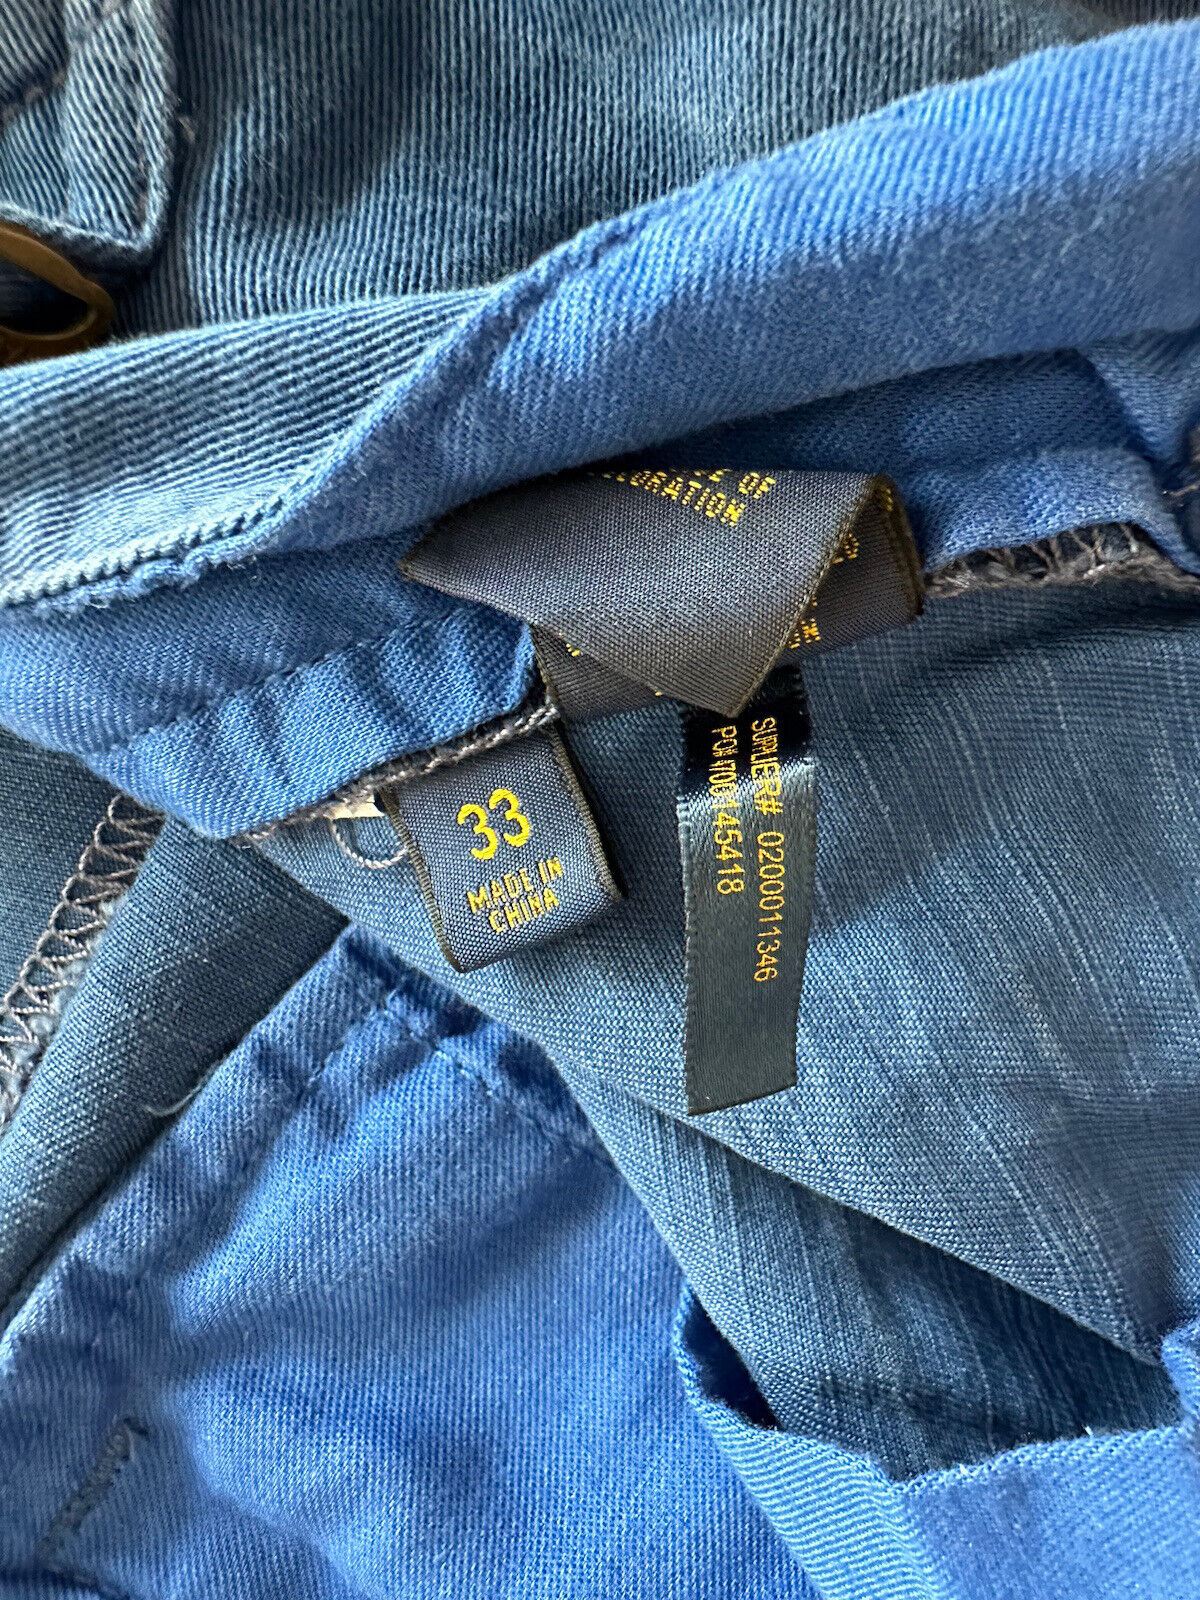 Polo Ralph Lauren Men's Blue Shorts Size 33 US